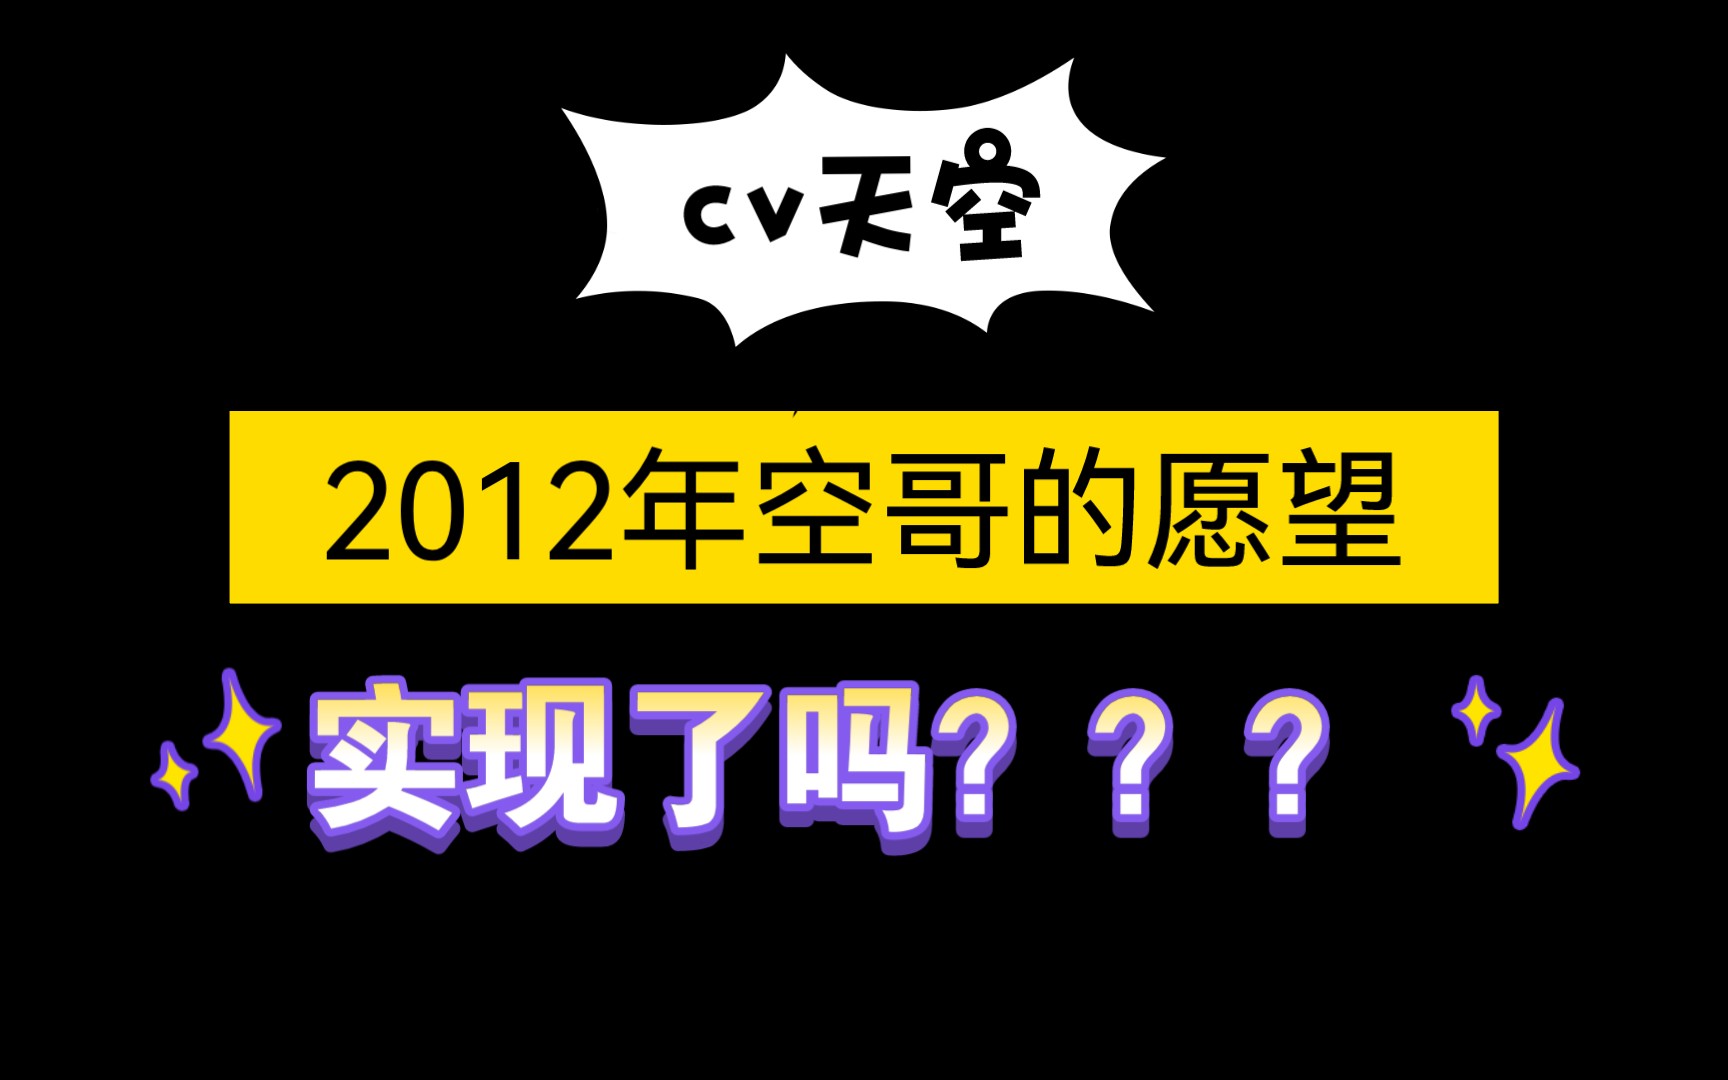 【cv天空】2012年空哥的愿望，2021年实现了吗？